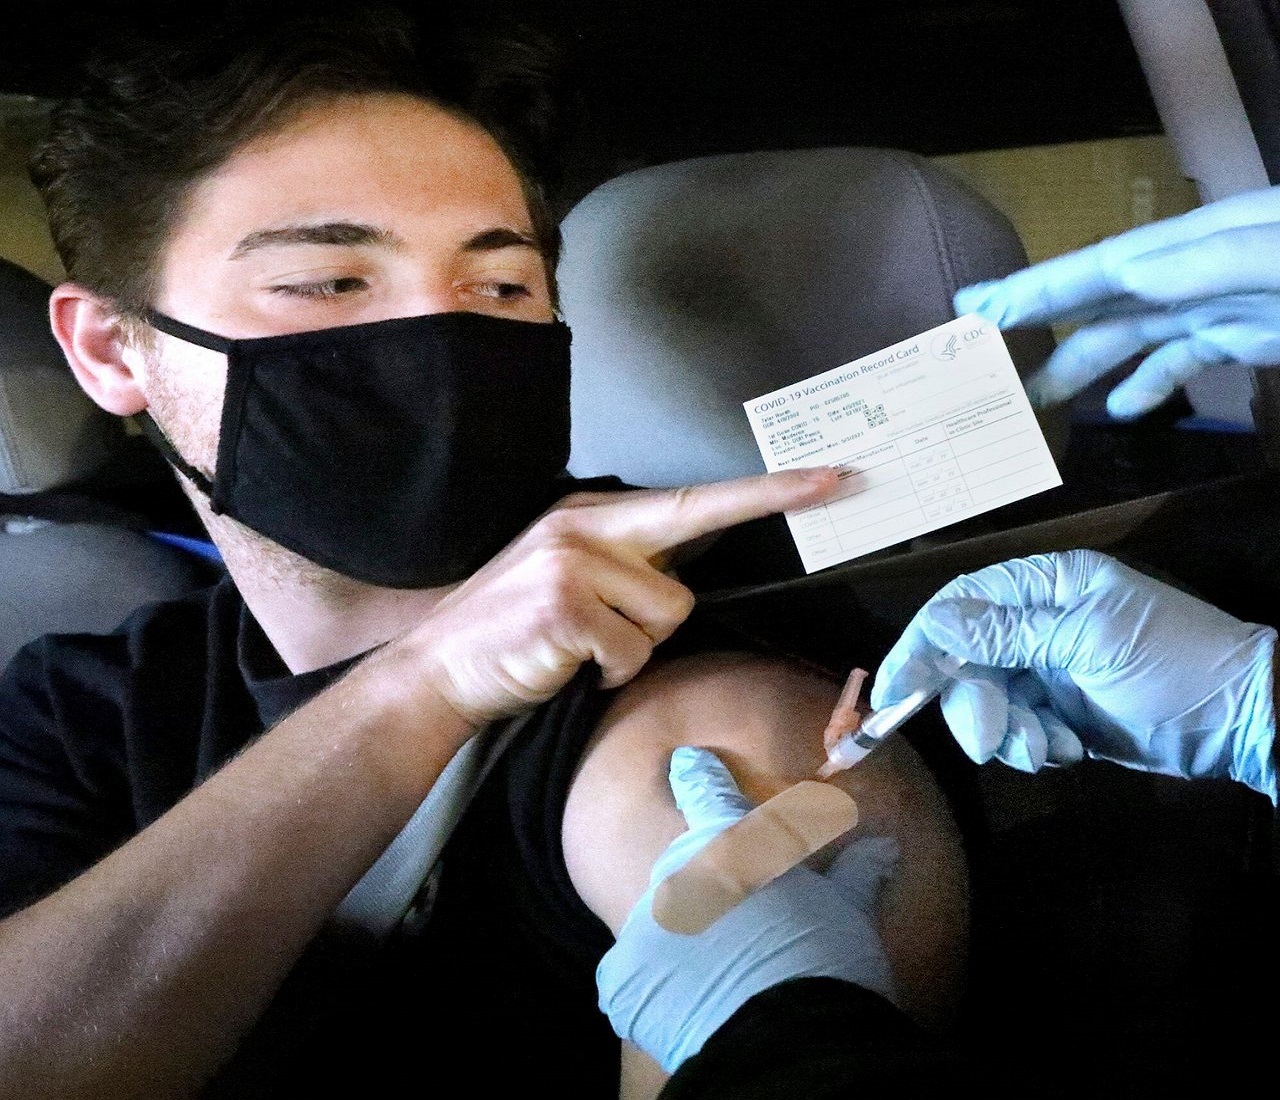 Εμβολιαστικό Κέντρο: Ιταλός προσπάθησε να χρησιμοποιήσει ψεύτικο χέρι για να αποφύγει τον εμβολιασμό κατά της covid